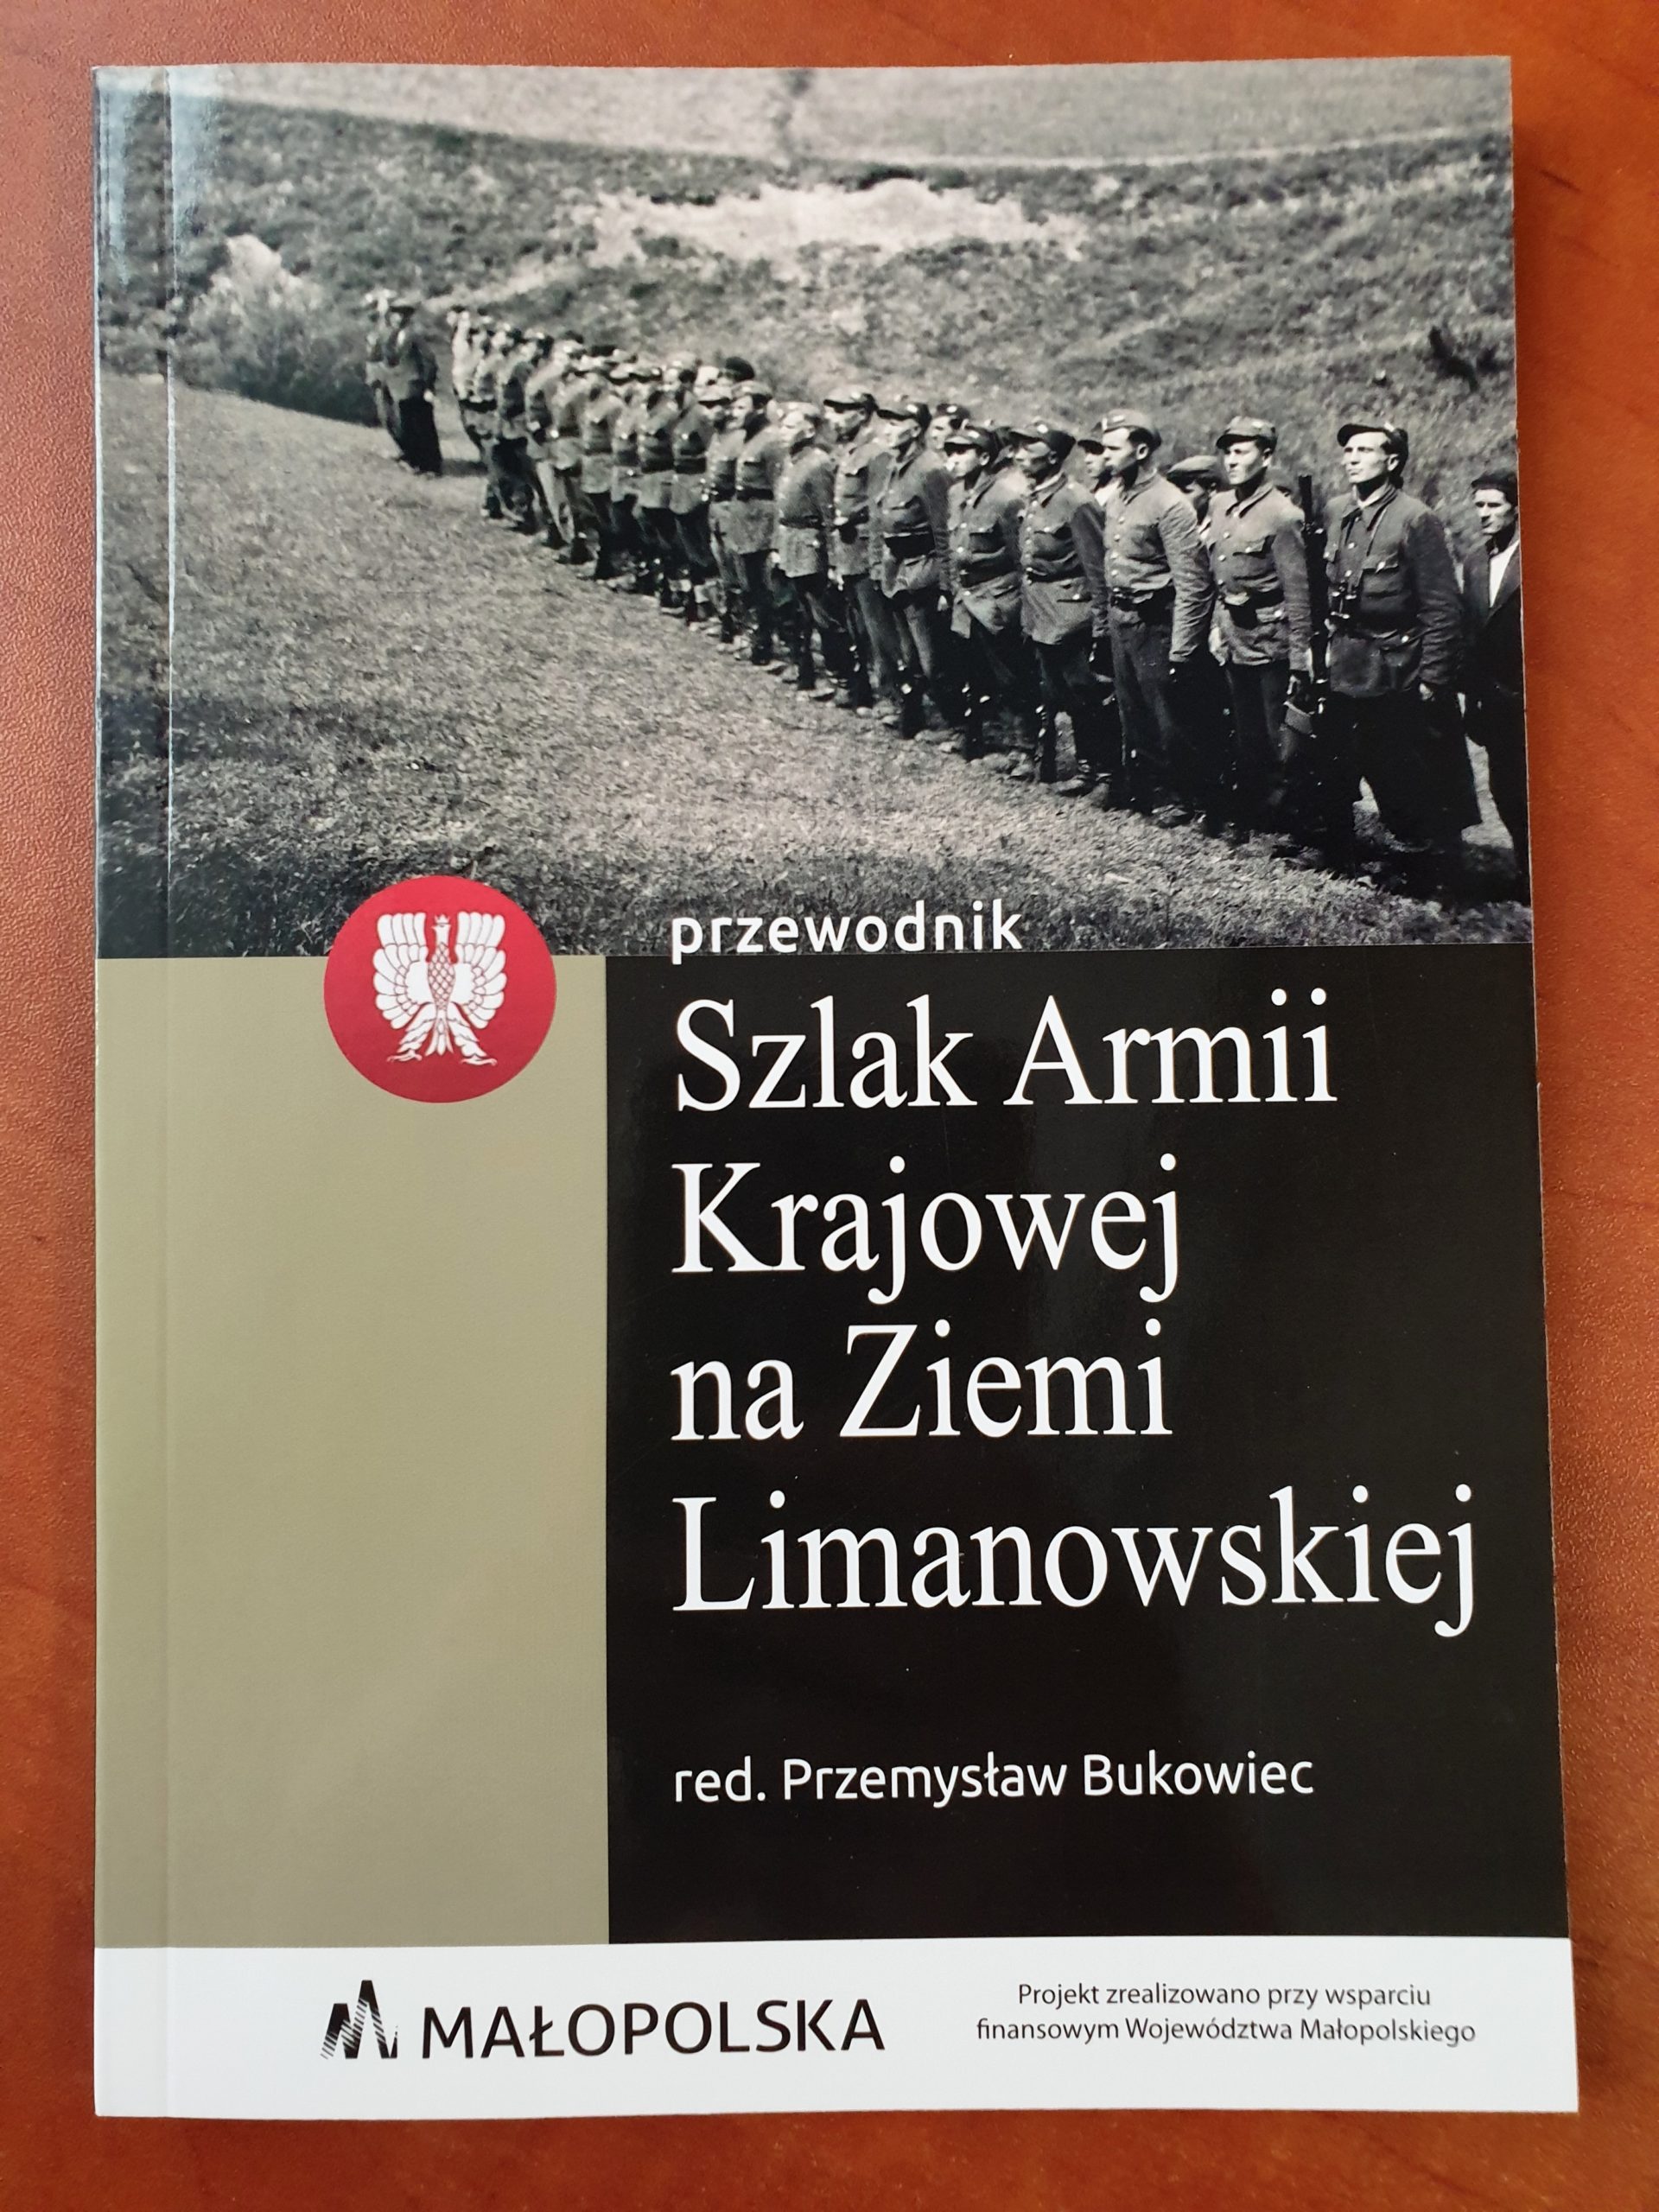 You are currently viewing Szlak AK na Ziemi Limanowskiej – Przewodnik